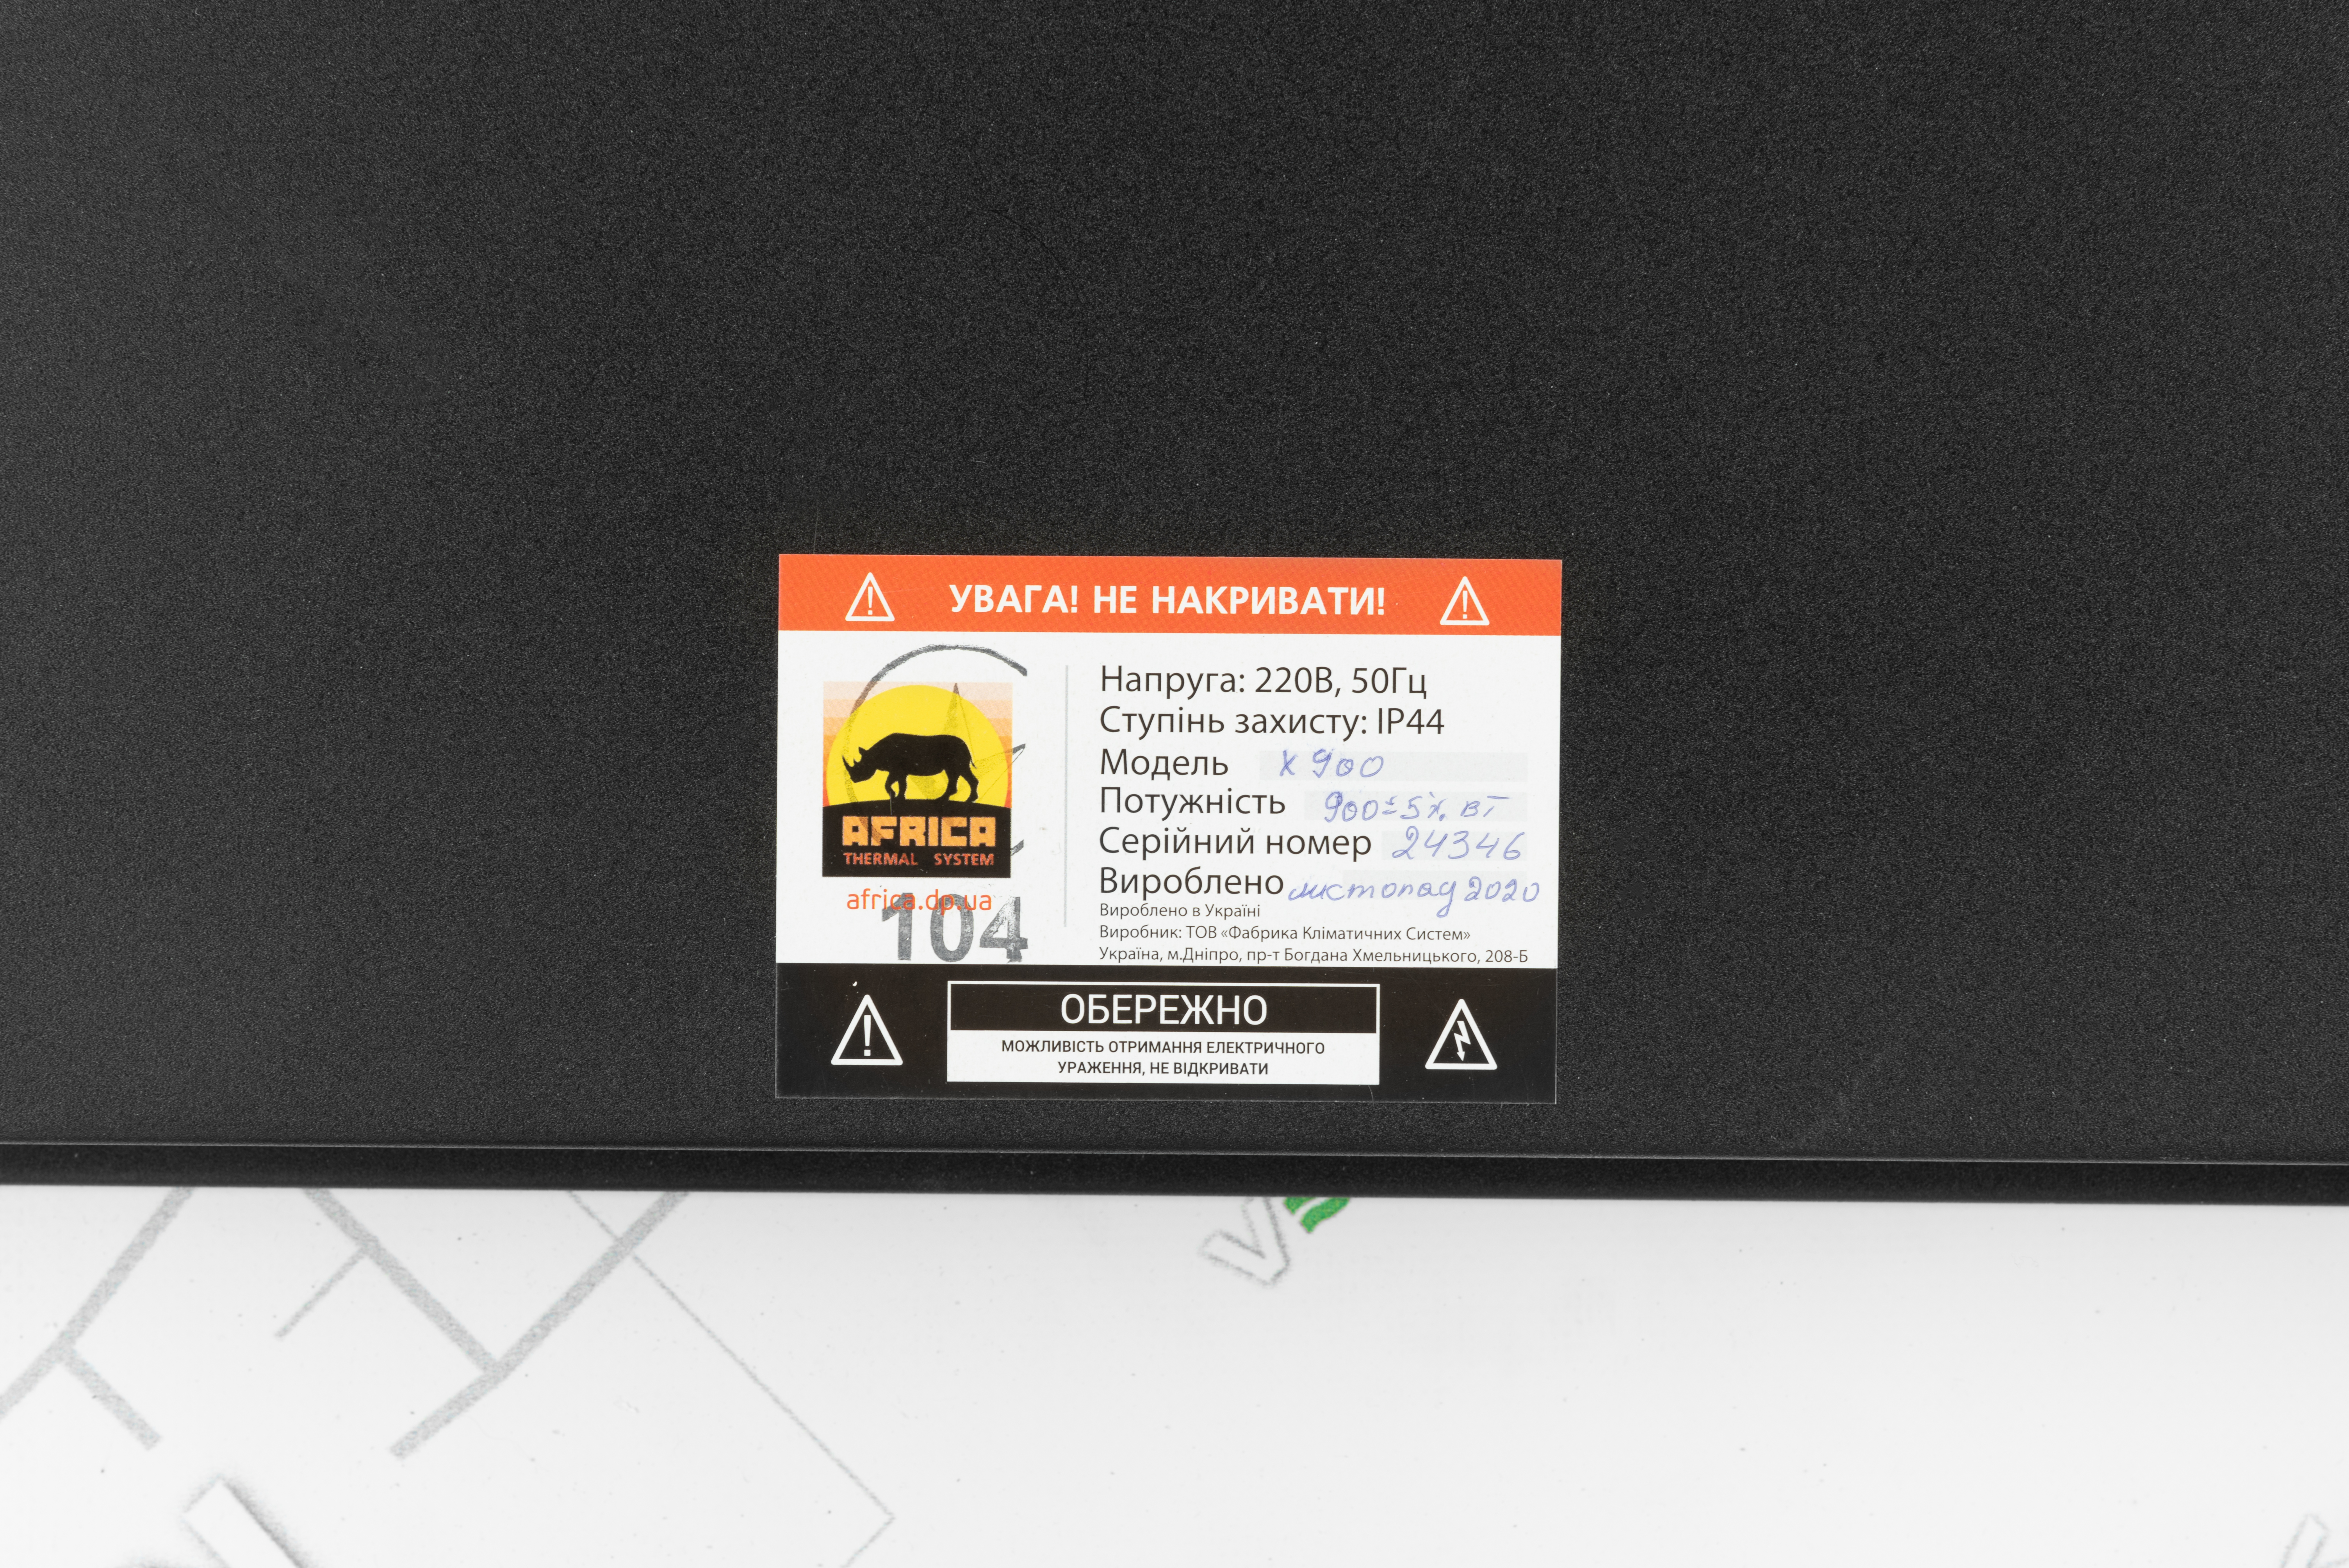 Панельный обогреватель Africa X900 графитовый отзывы - изображения 5